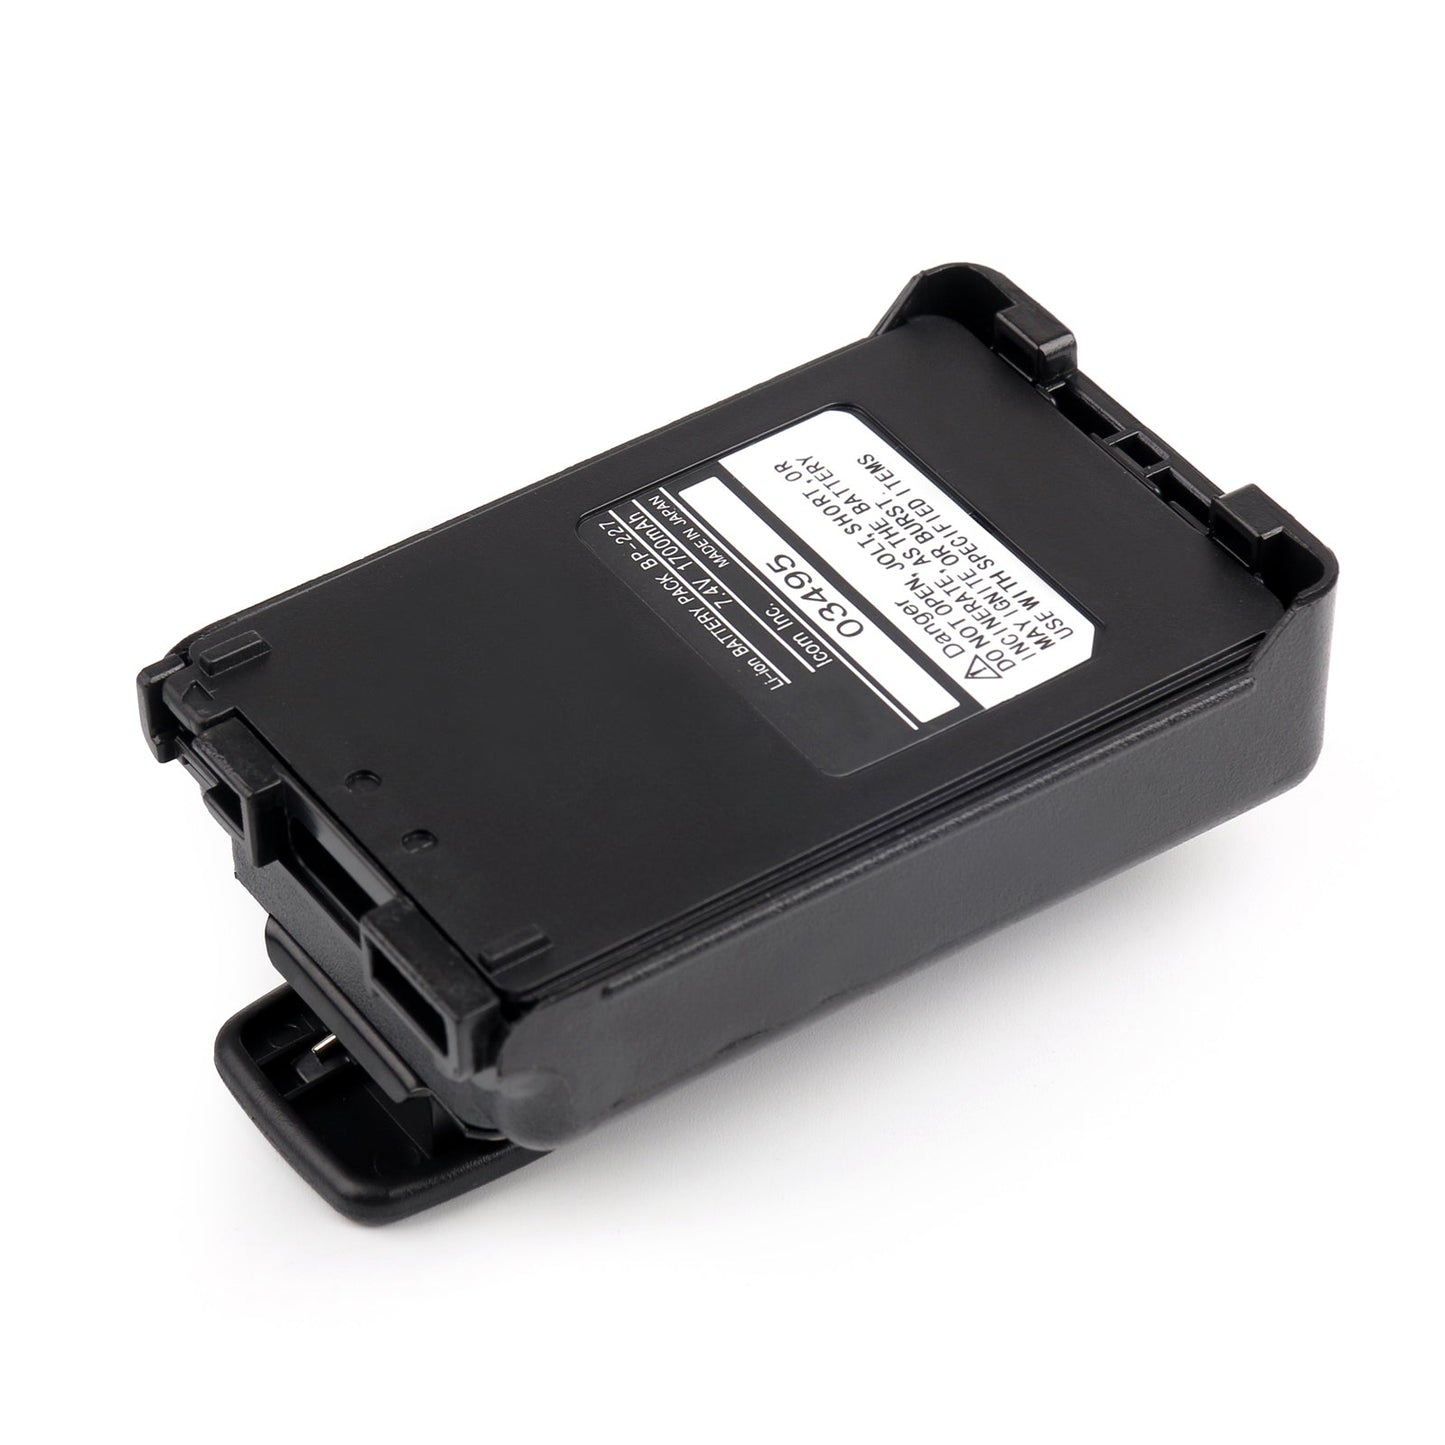 1PCS 7.4V 1700mAh BP-227 Battery Case For Icom IC-V85 IC-51 IC-M88